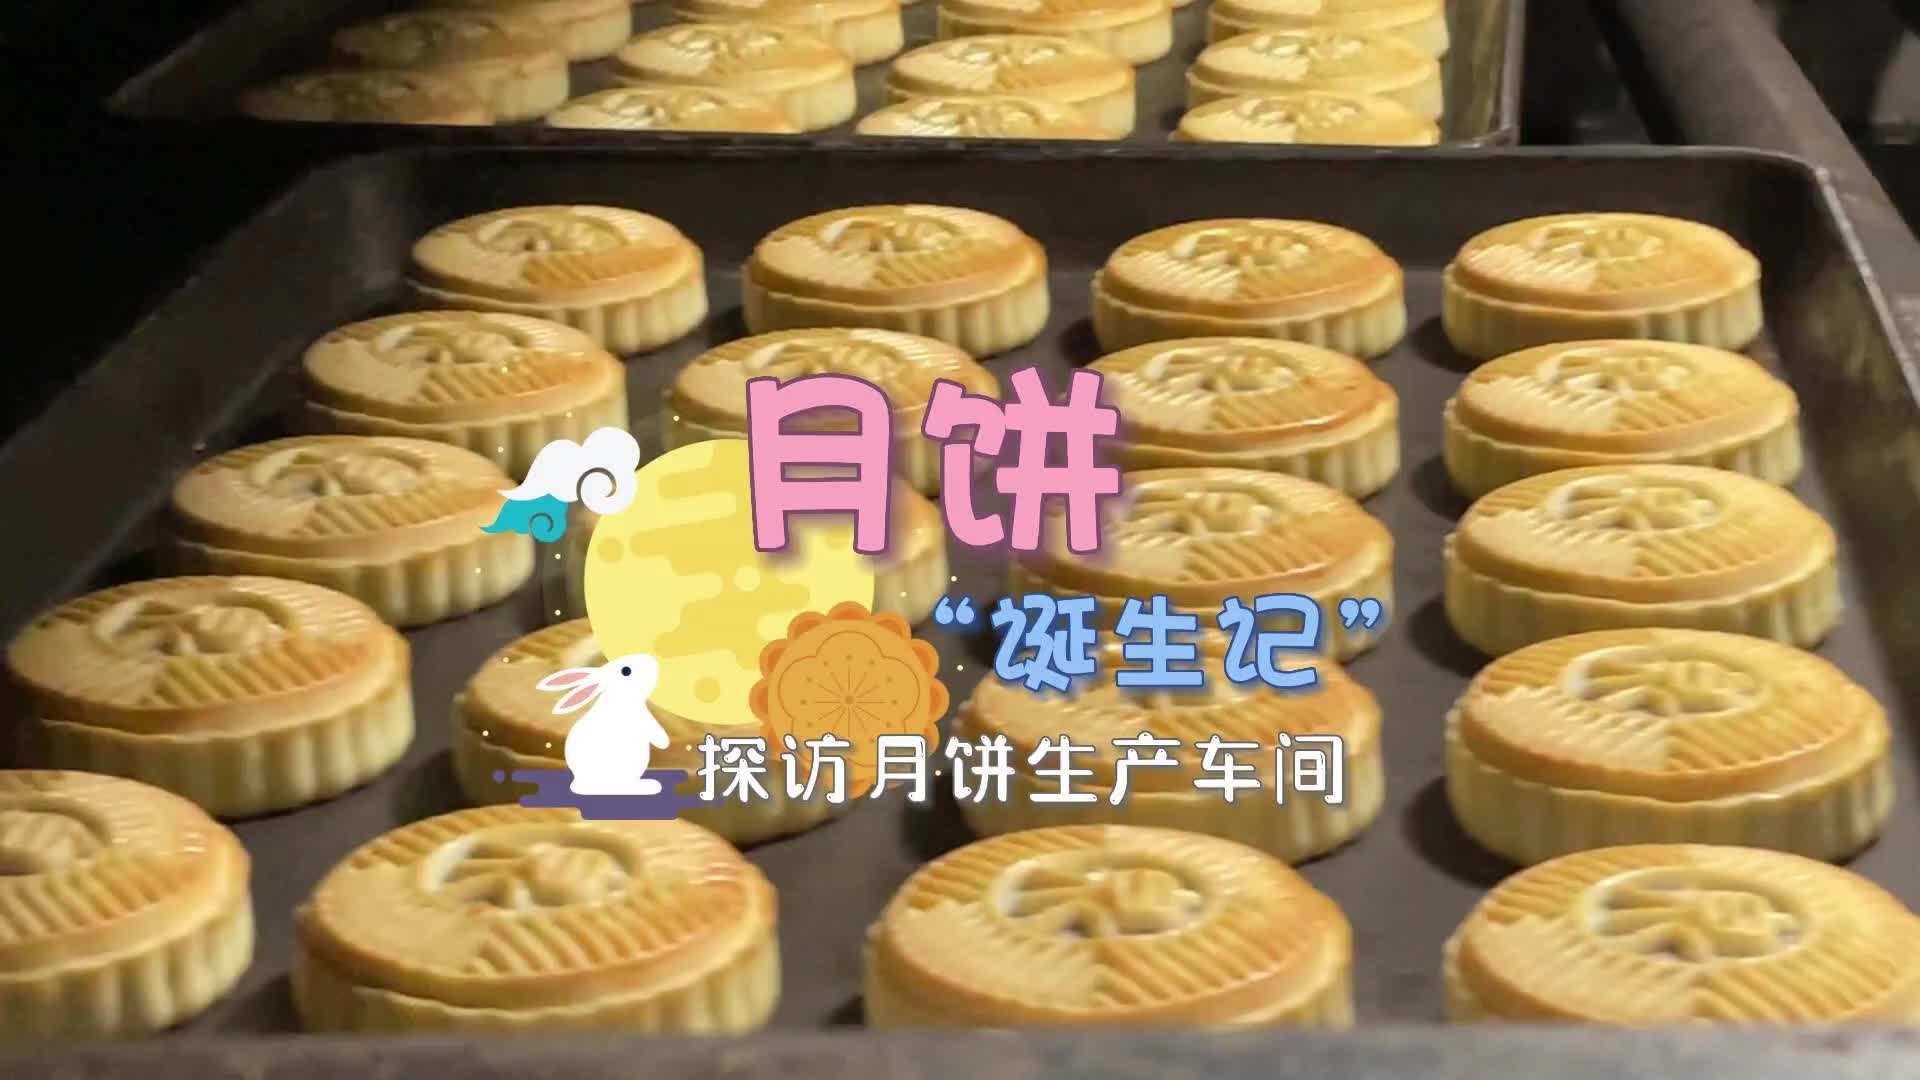 更济宁 | 月饼“诞生记” 探访月饼生产车间